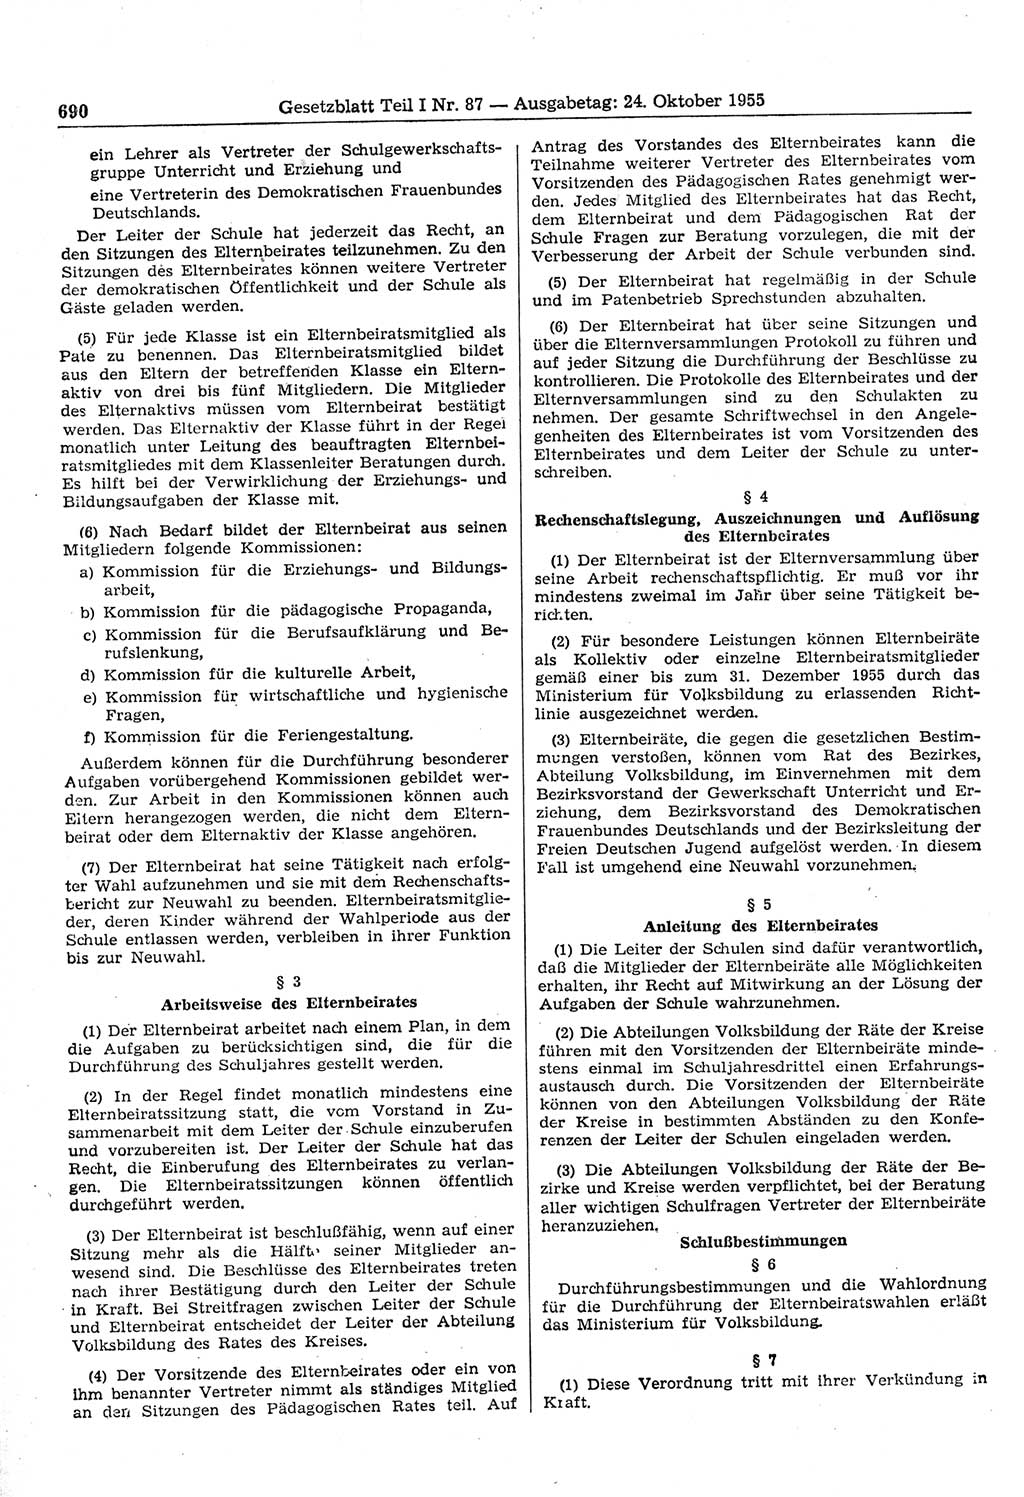 Gesetzblatt (GBl.) der Deutschen Demokratischen Republik (DDR) Teil Ⅰ 1955, Seite 690 (GBl. DDR Ⅰ 1955, S. 690)